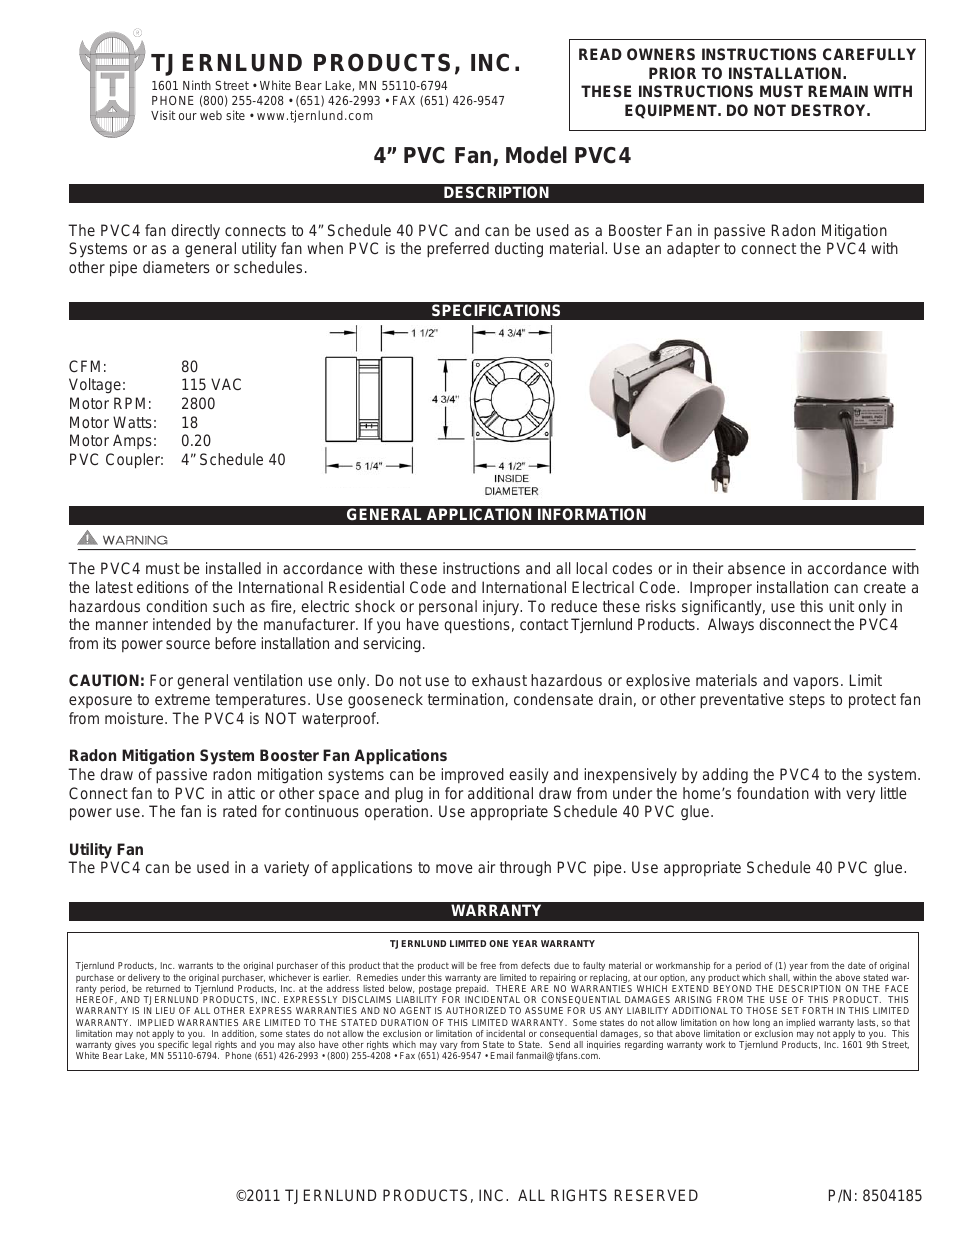 PVC4 Radon Mitigation System Booster Fan 8504185